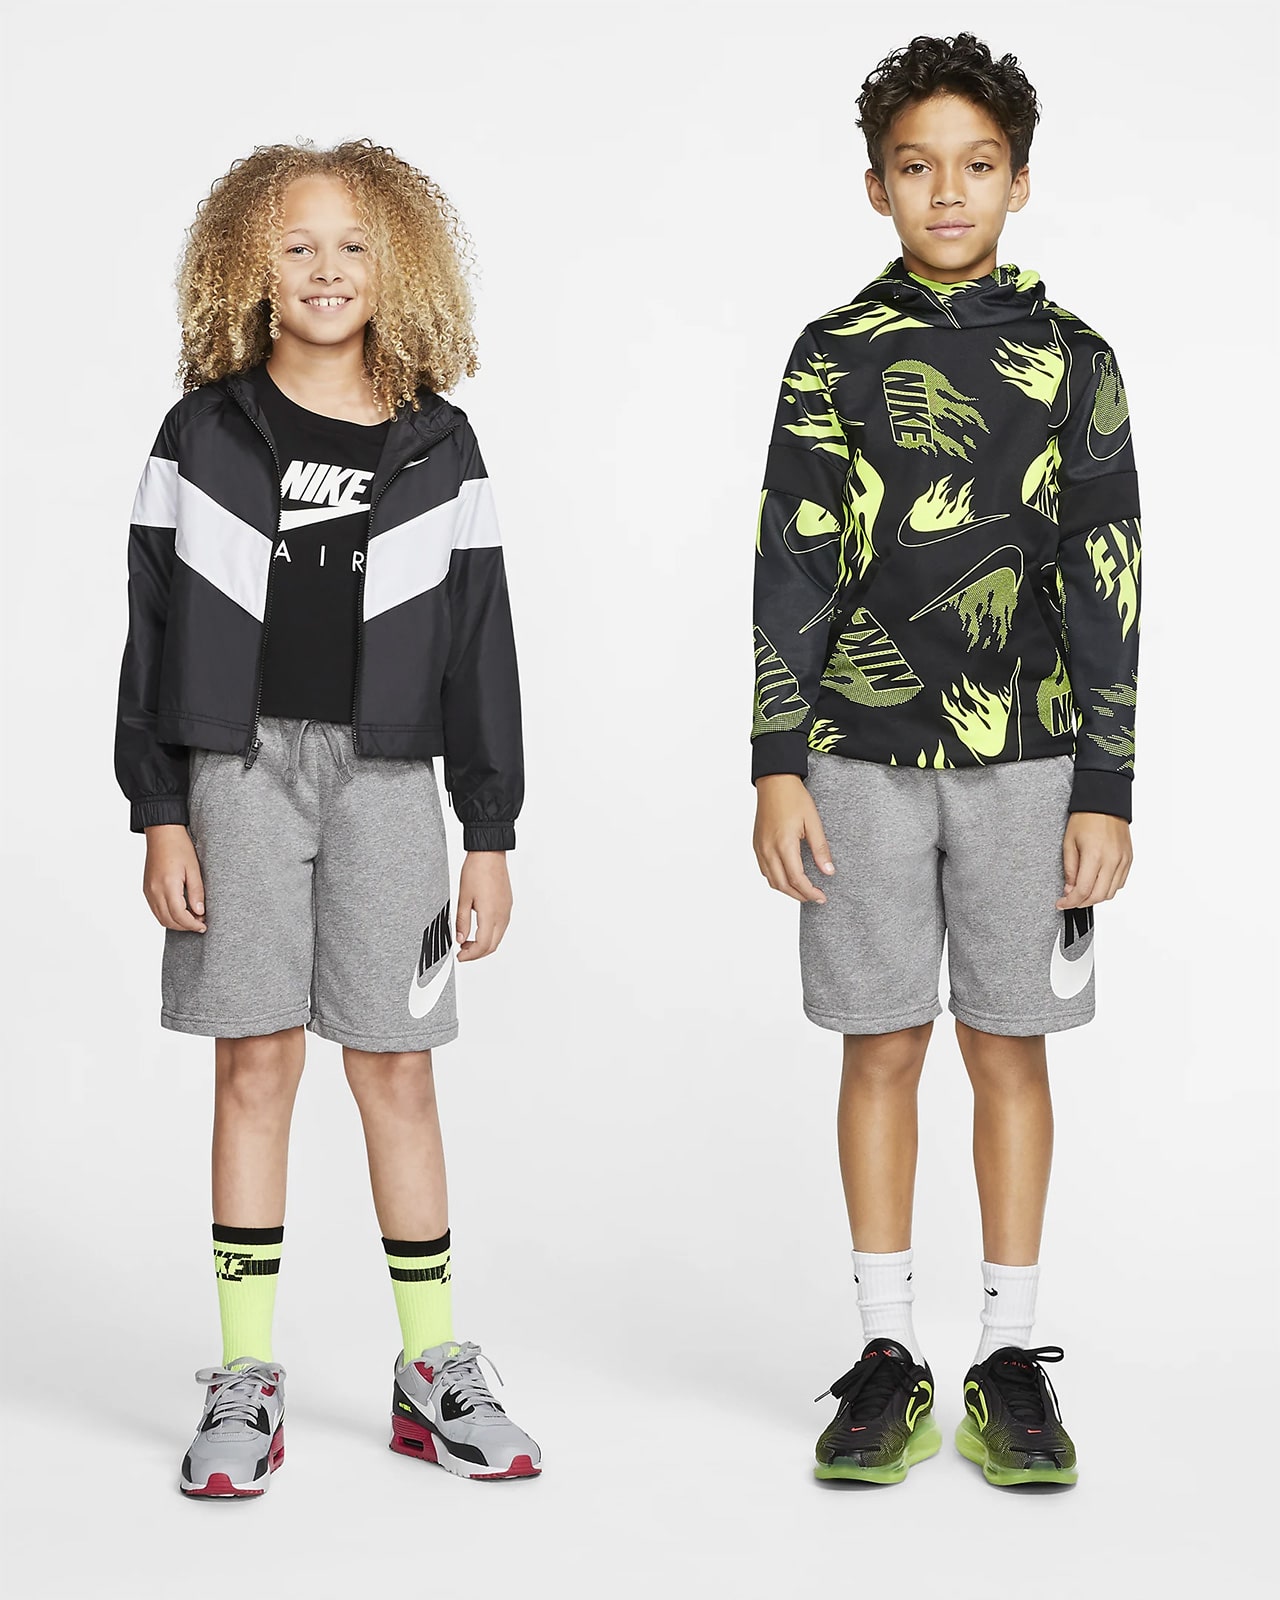 Детская одежда Nike